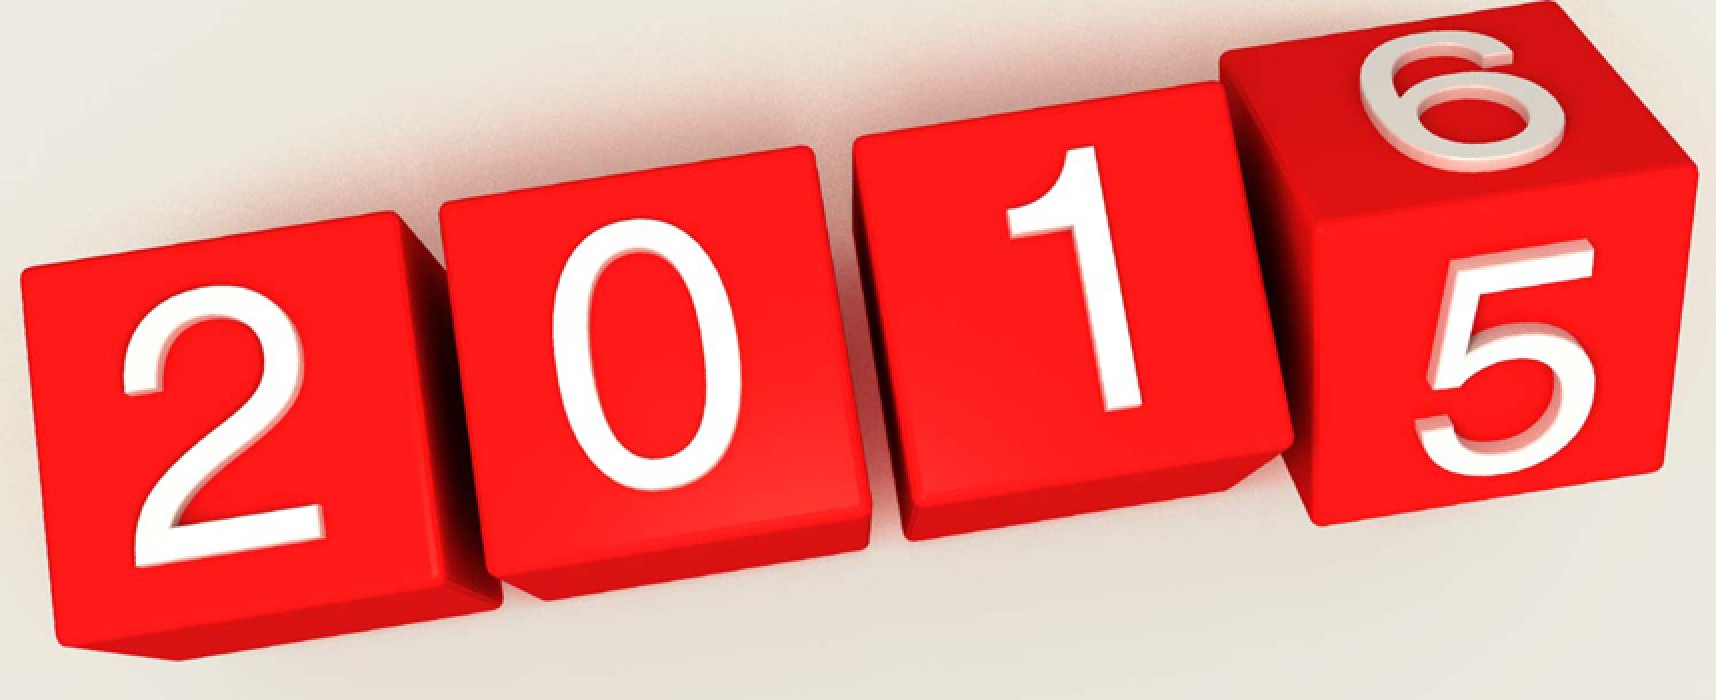 Il 2015 di Bisceglie? Ripercorriamolo con le notizie più importanti dell’anno